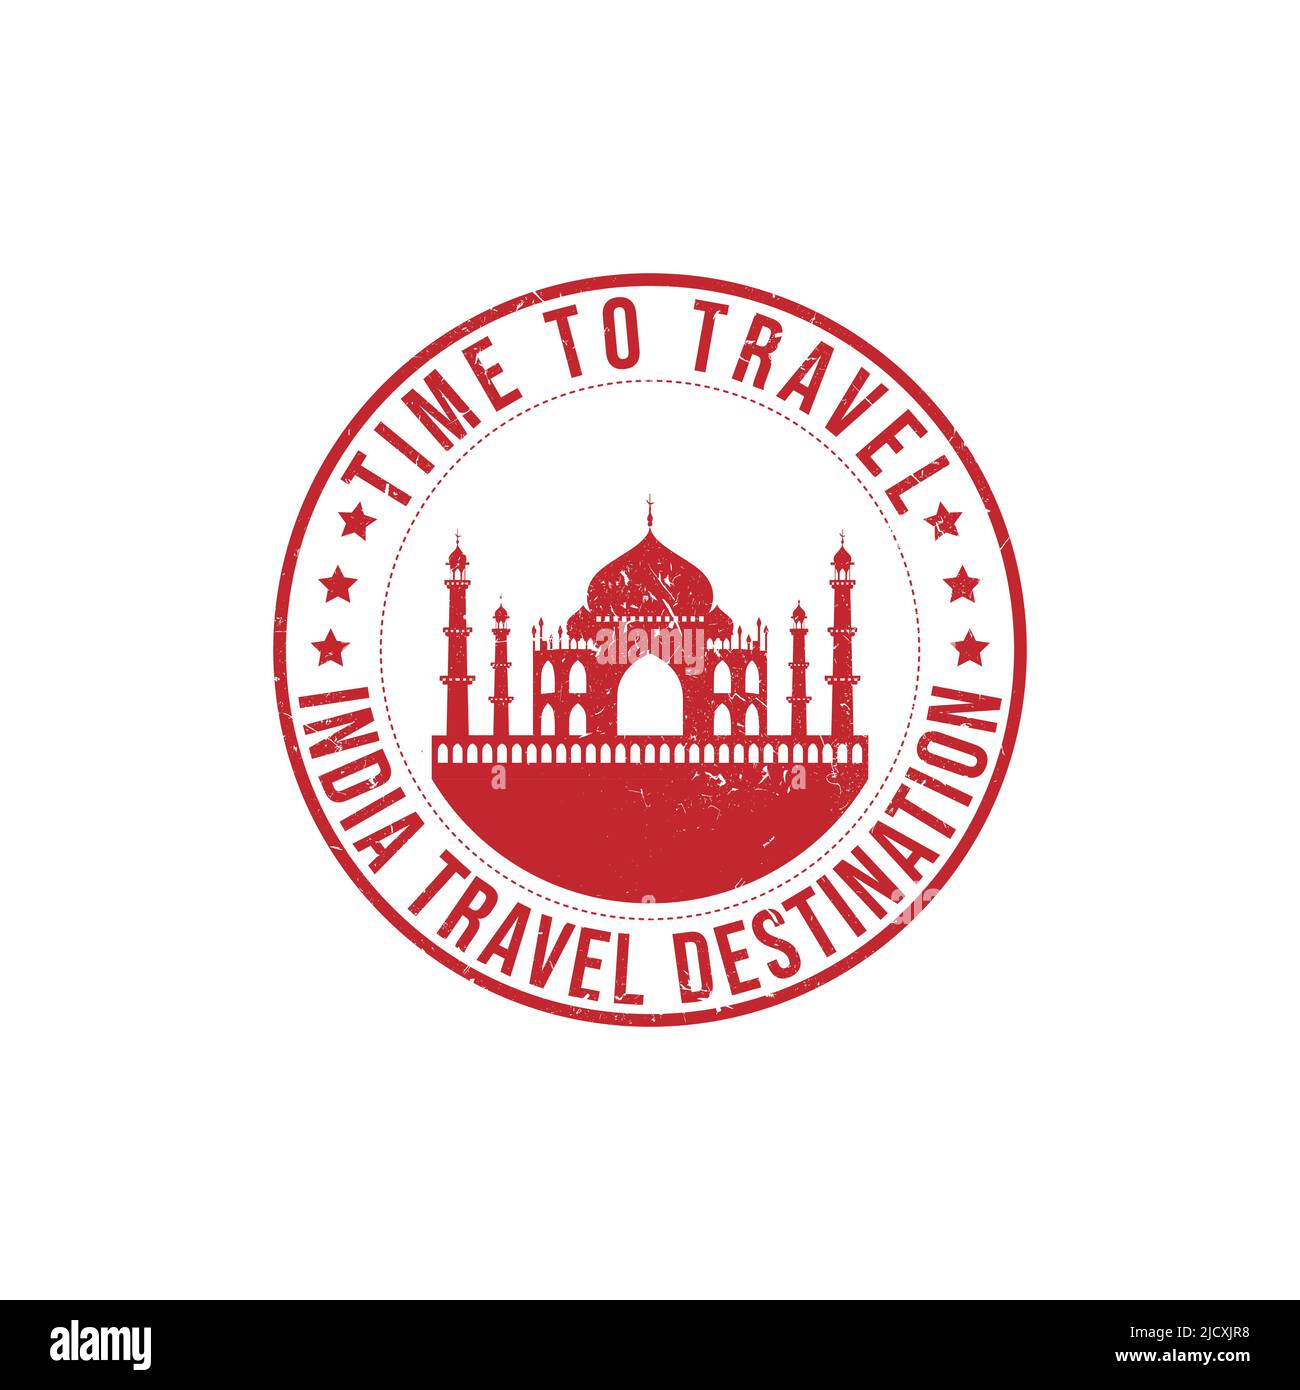 Grunge Gummistempel mit dem Text Indien Reiseziel in der Marke geschrieben. Zeit zum Reisen. Silhouette von Taj mahal Vektor-Bild Stock Vektor